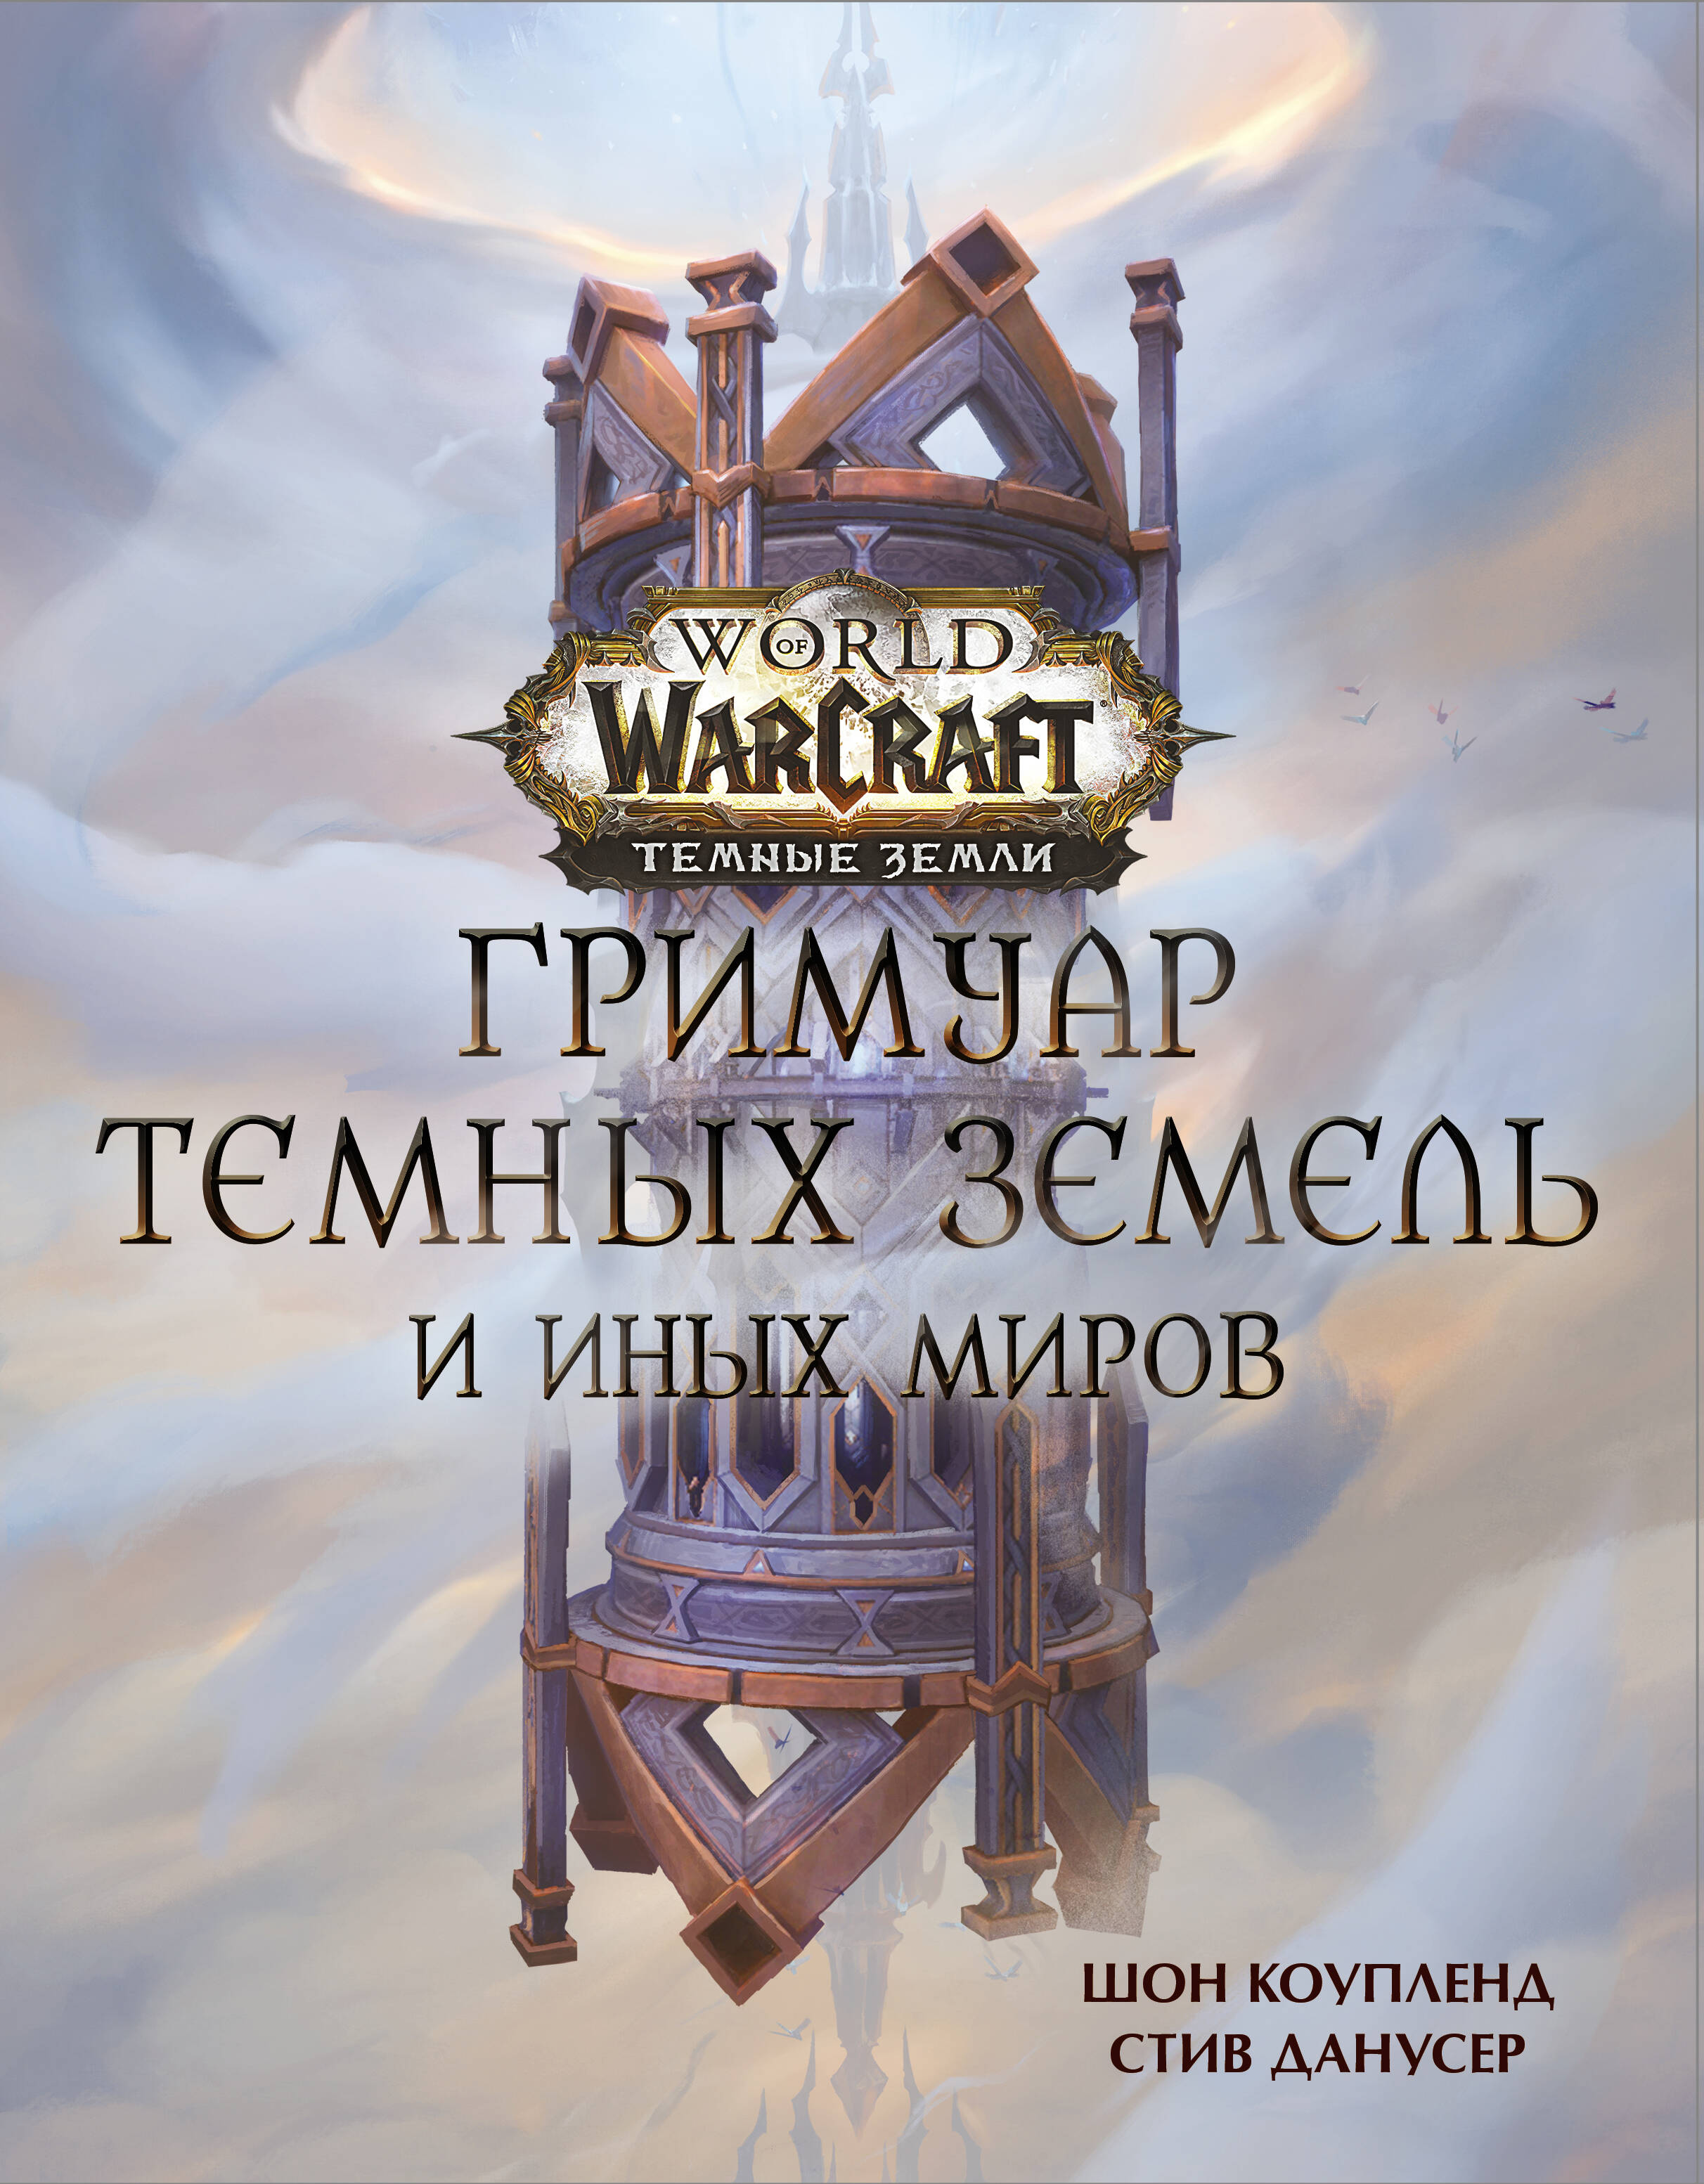 Коупленд Шон, Данусер Стив - World of Warcraft. Гримуар Темных земель и иных миров